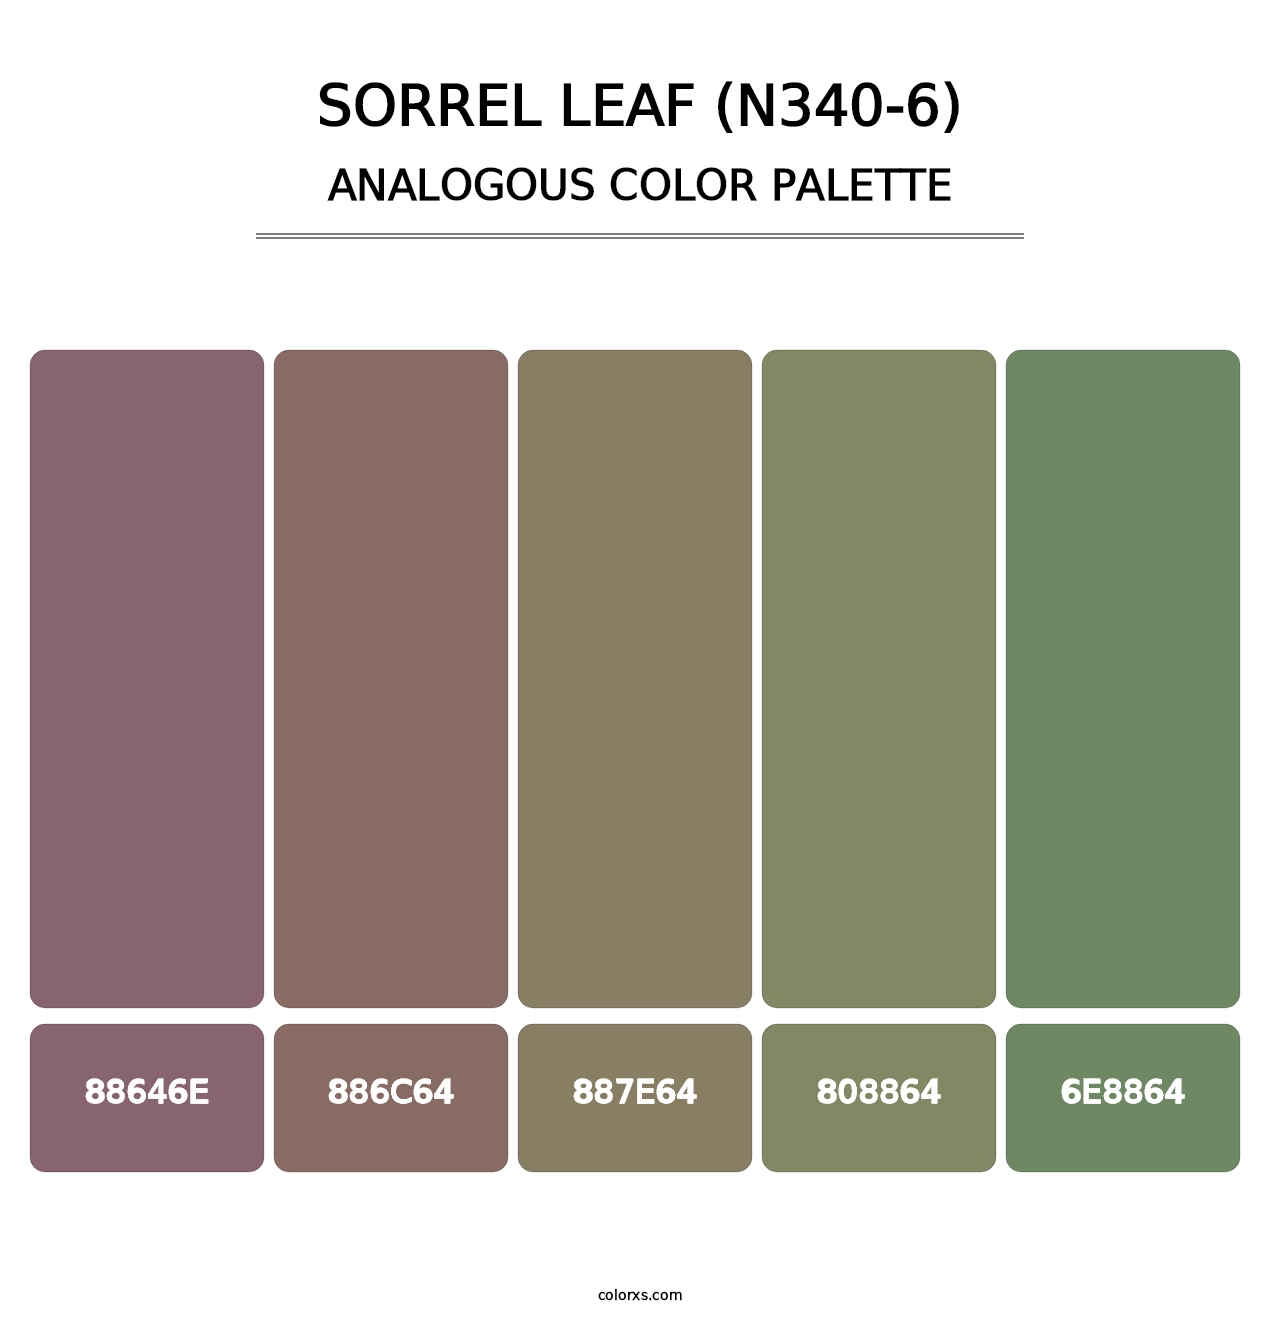 Sorrel Leaf (N340-6) - Analogous Color Palette